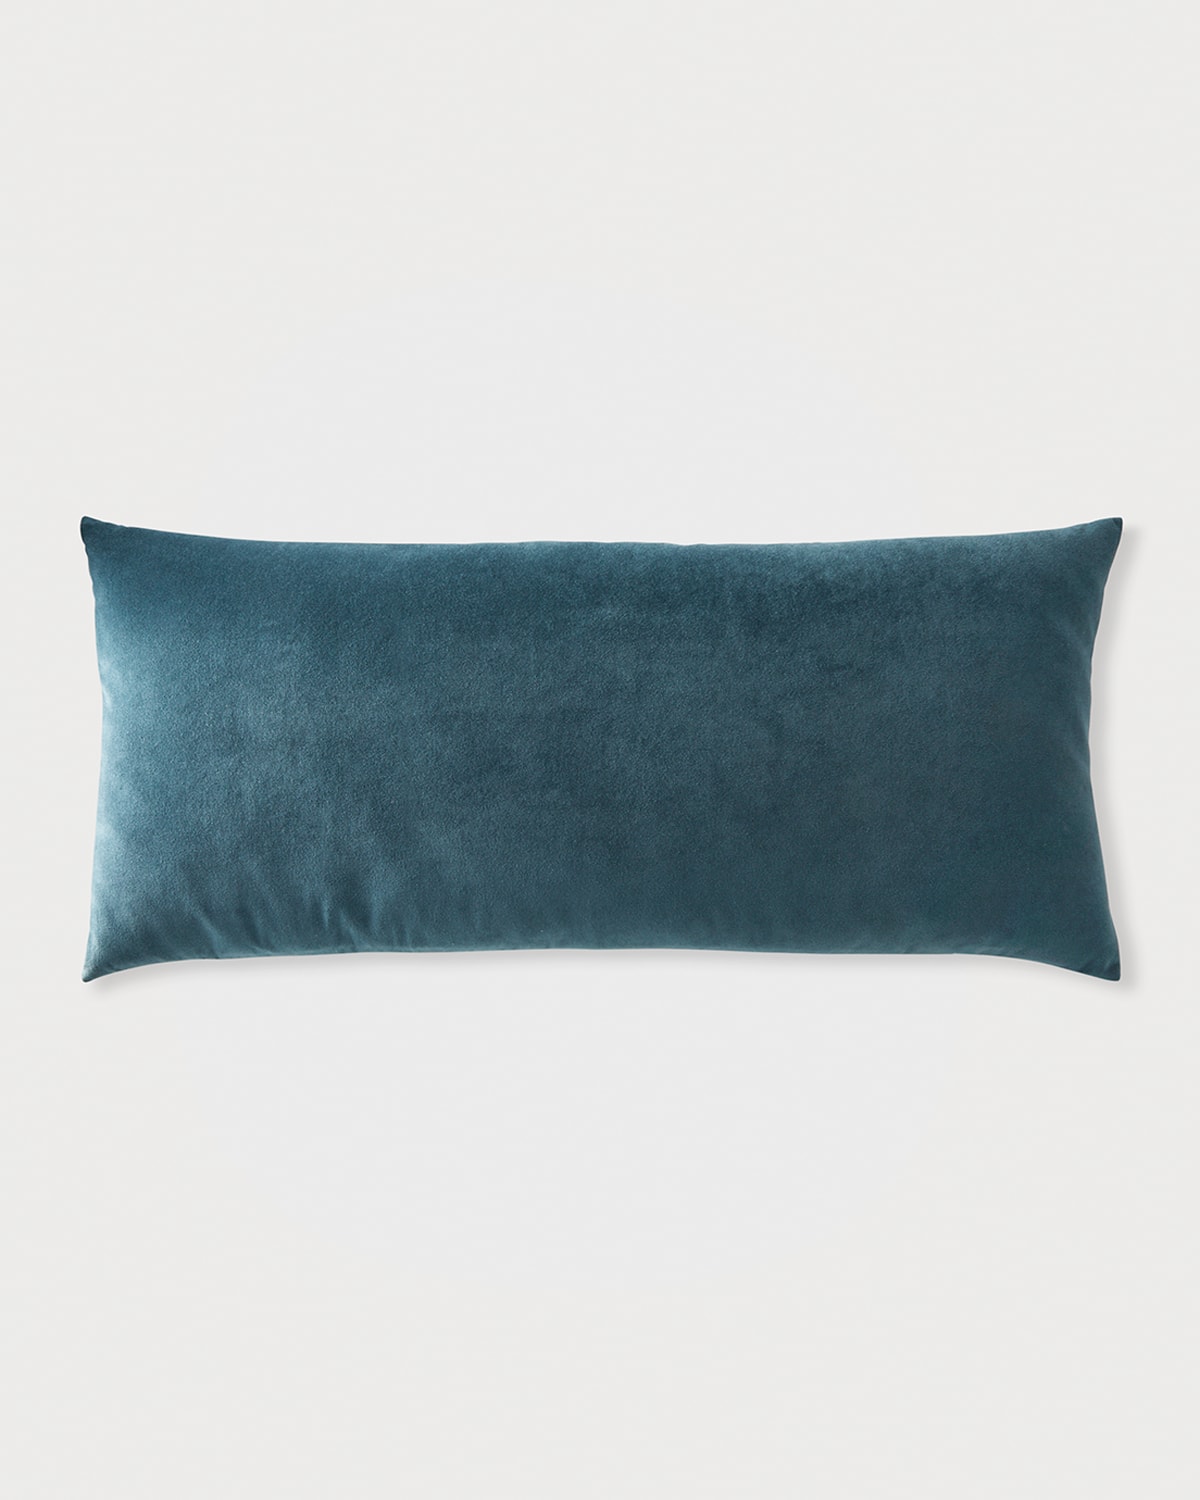 Obsession Velvet Pillow, 16x36"